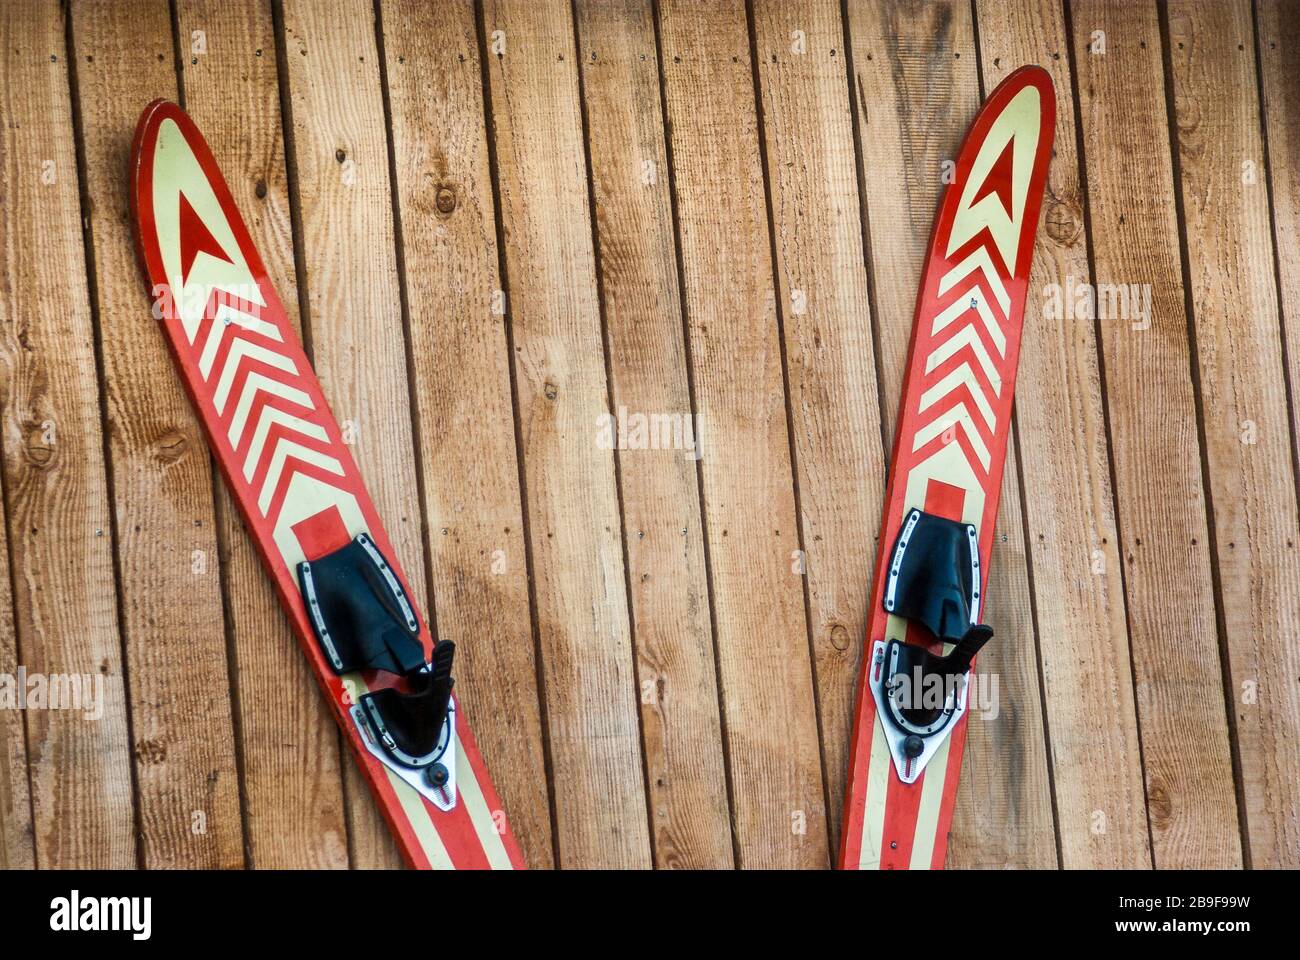 Une paire de skis nautiques accrochés sur un mur de planche et cloués, attachés à l'ongle, éine Paar Wasserski an eine Bretterwand aufgehängt und genagelt, an den Nag Banque D'Images